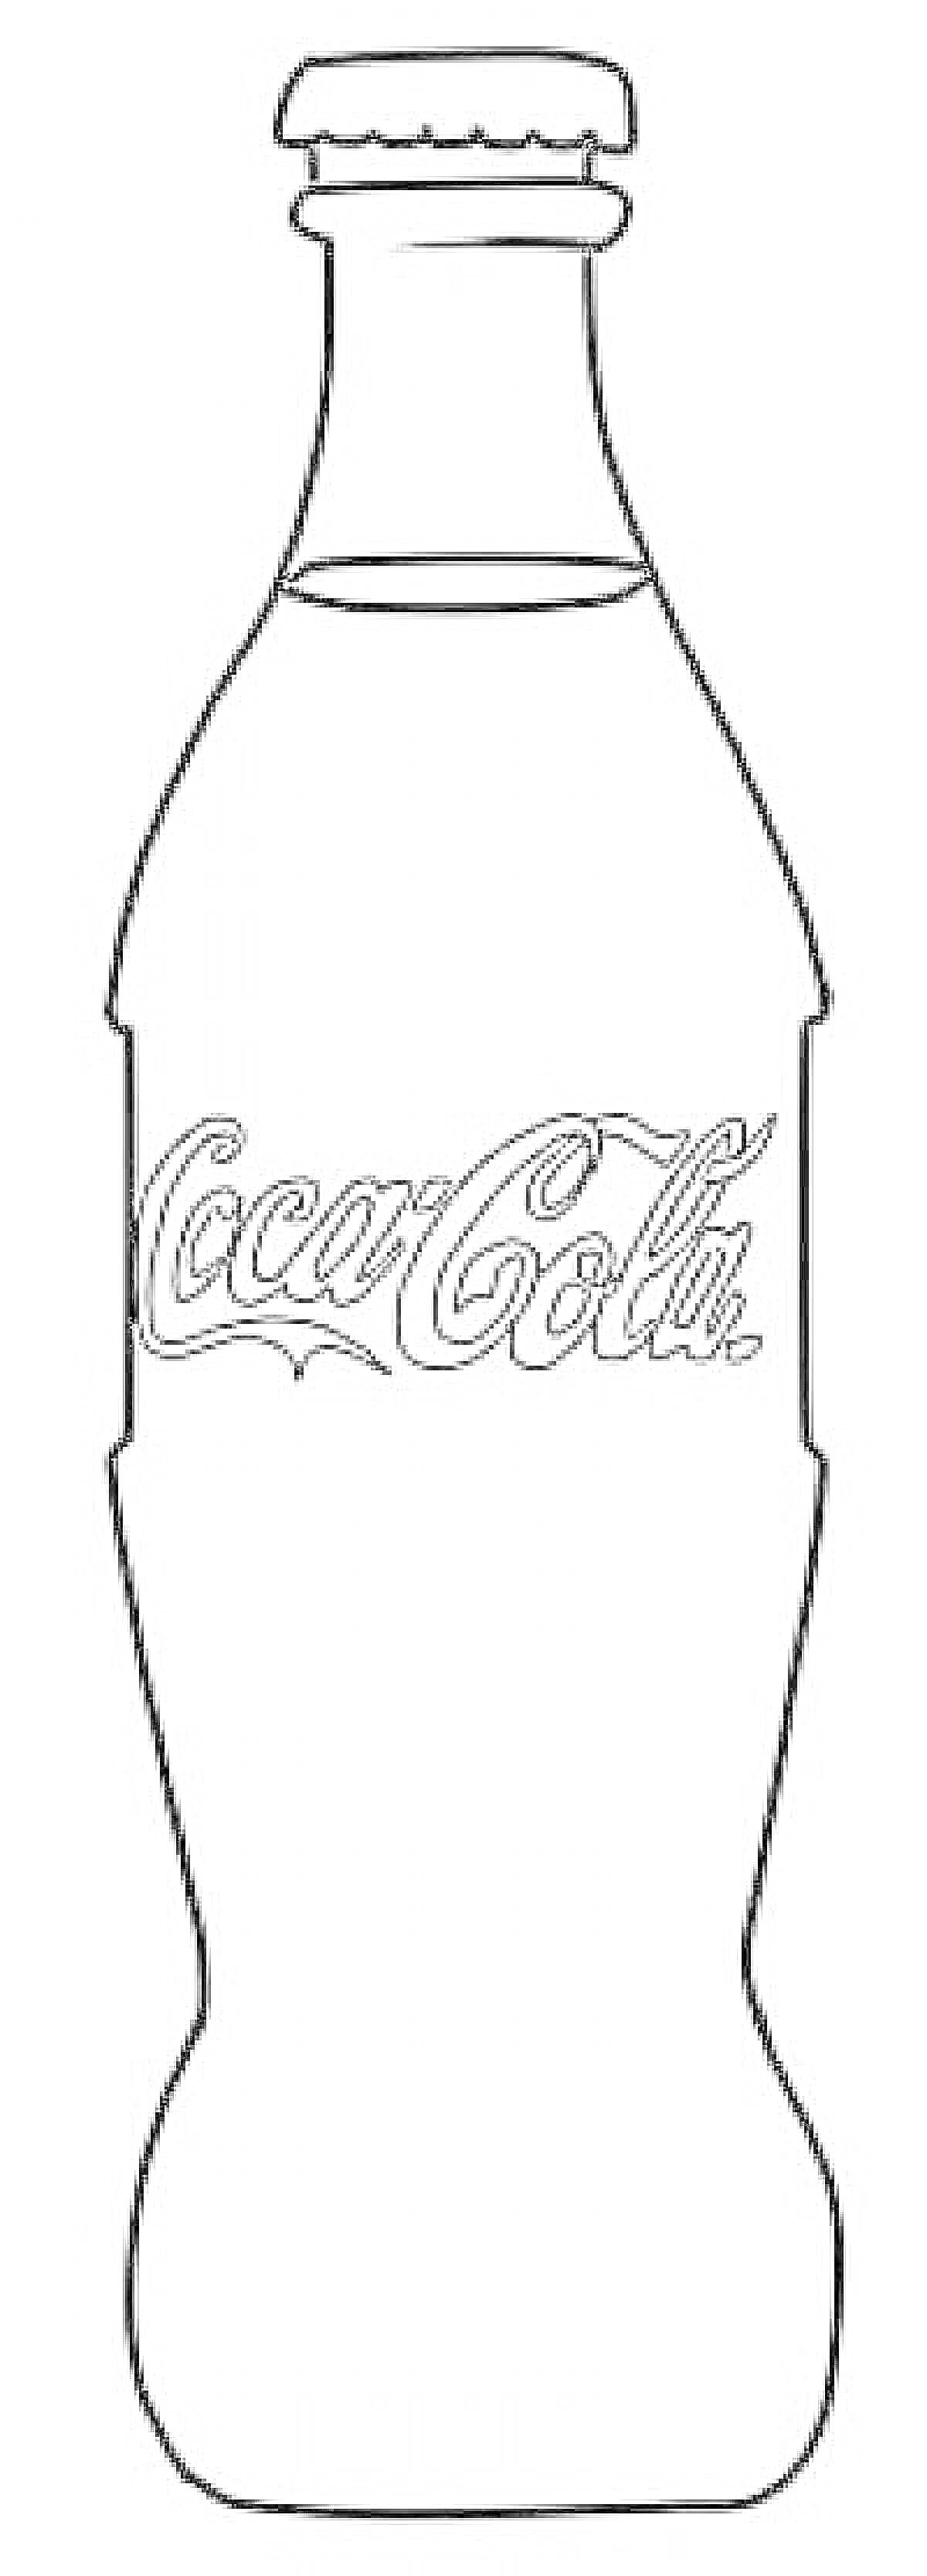 Раскраска бутылка Кока-Колы с наклейкой Coca-Cola и крышкой